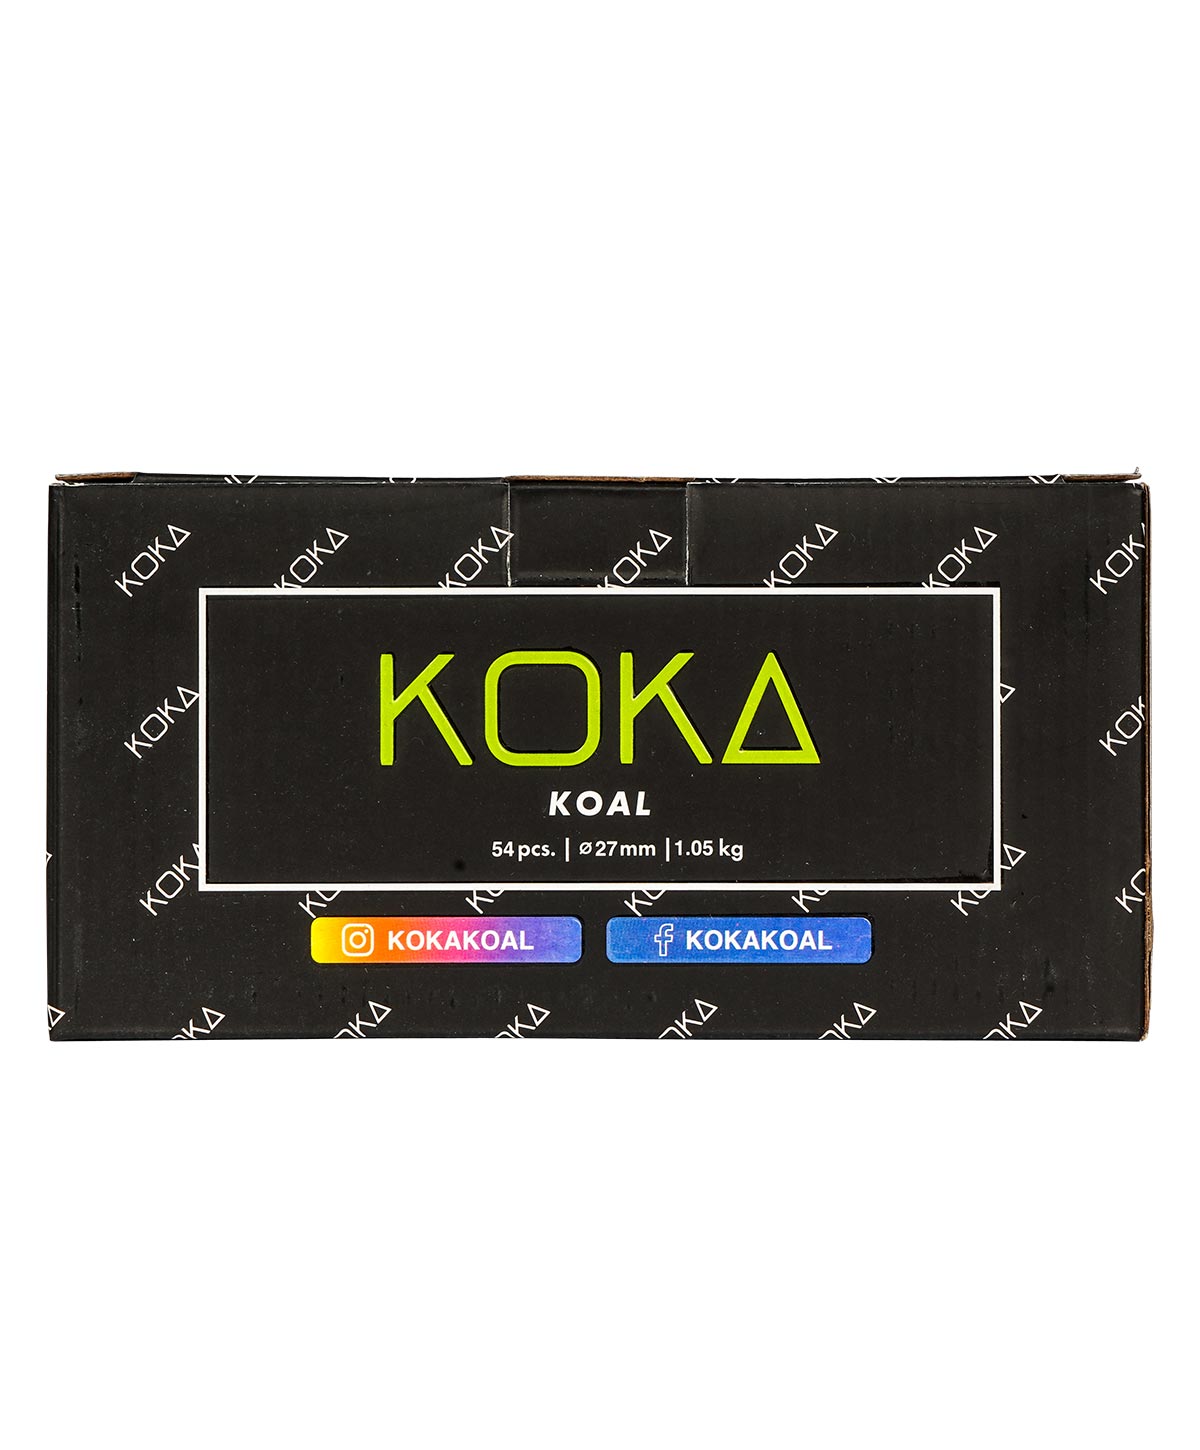 Koka Koal Shisha Kohle 27mm 20Kg